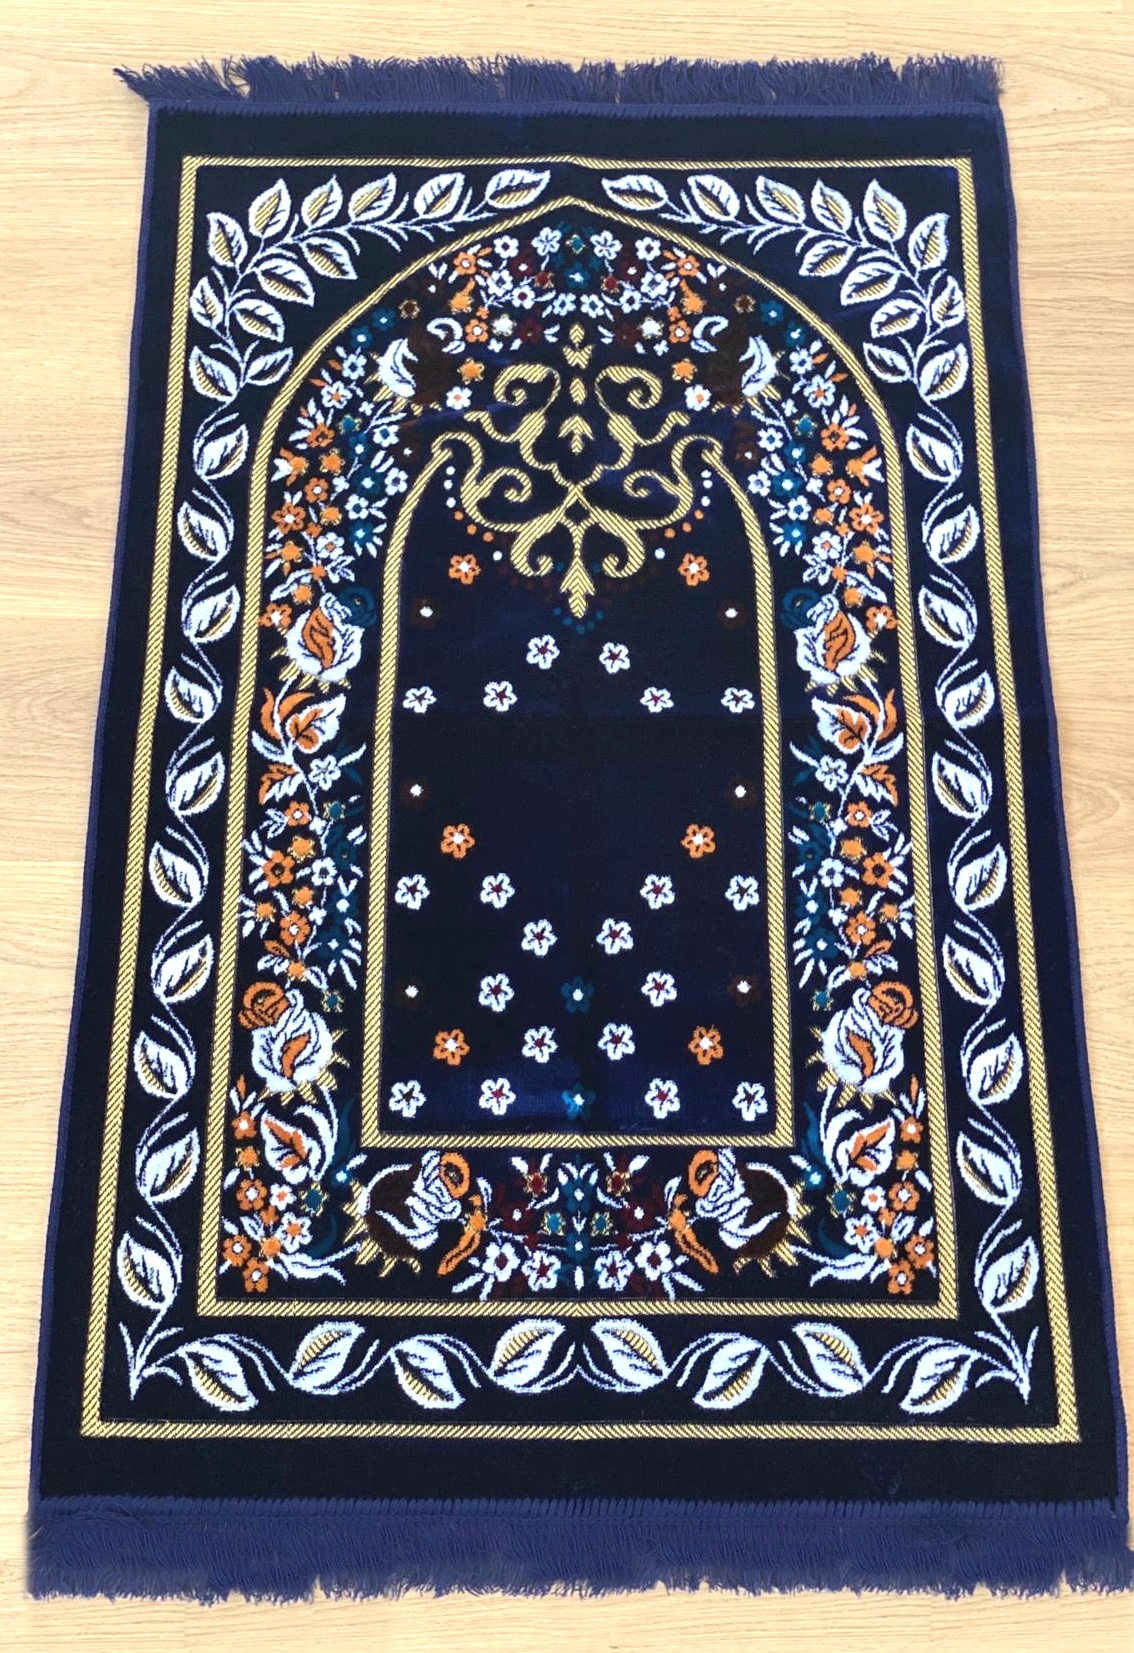 Tapis de prière (sajjadah salat) de qualité en velours avec motif fleuri  fabriqué en Turquie - Objet de décoration ou oeuvre artisanale sur Musulmane .fr